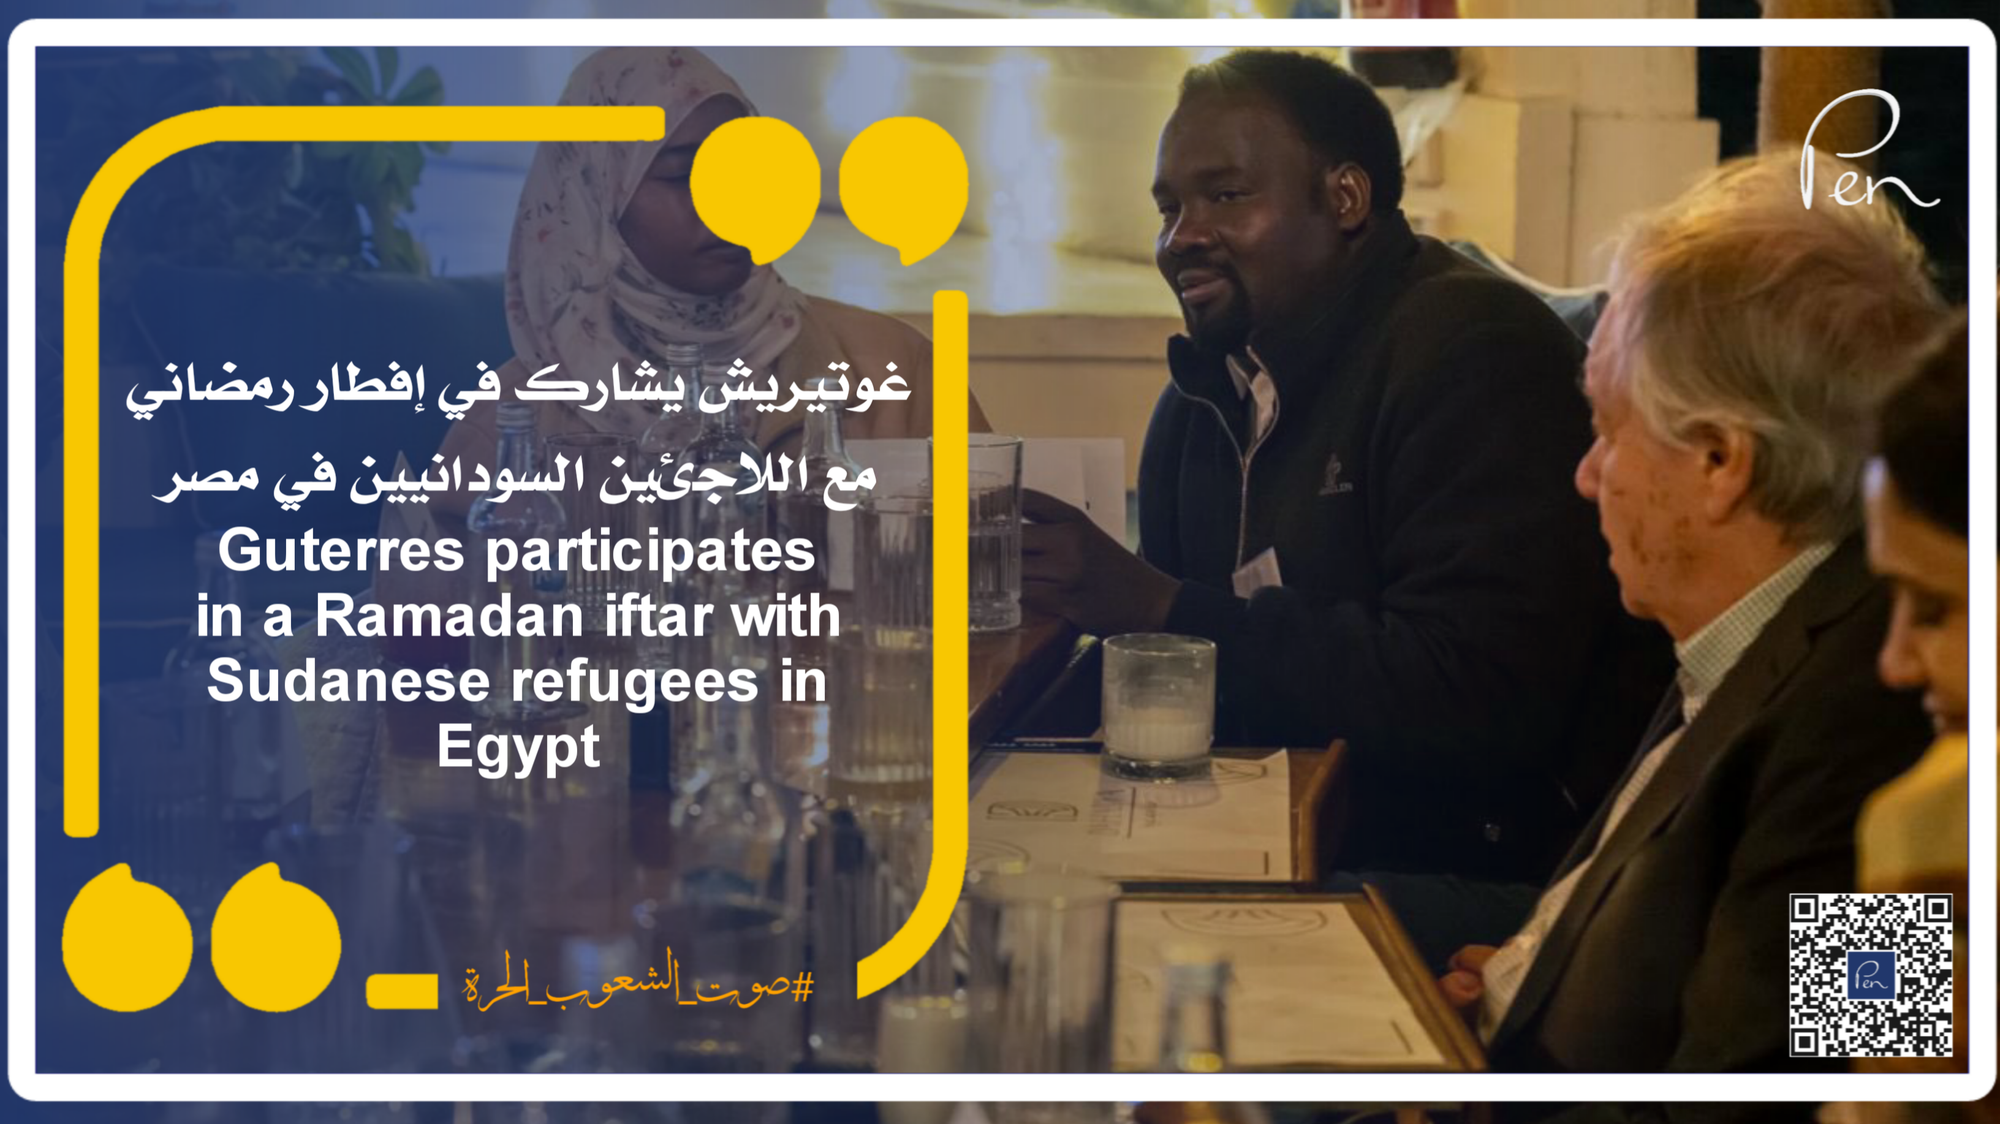 غوتيريش يشارك في إفطار رمضاني مع اللاجئين السودانيين في مصر